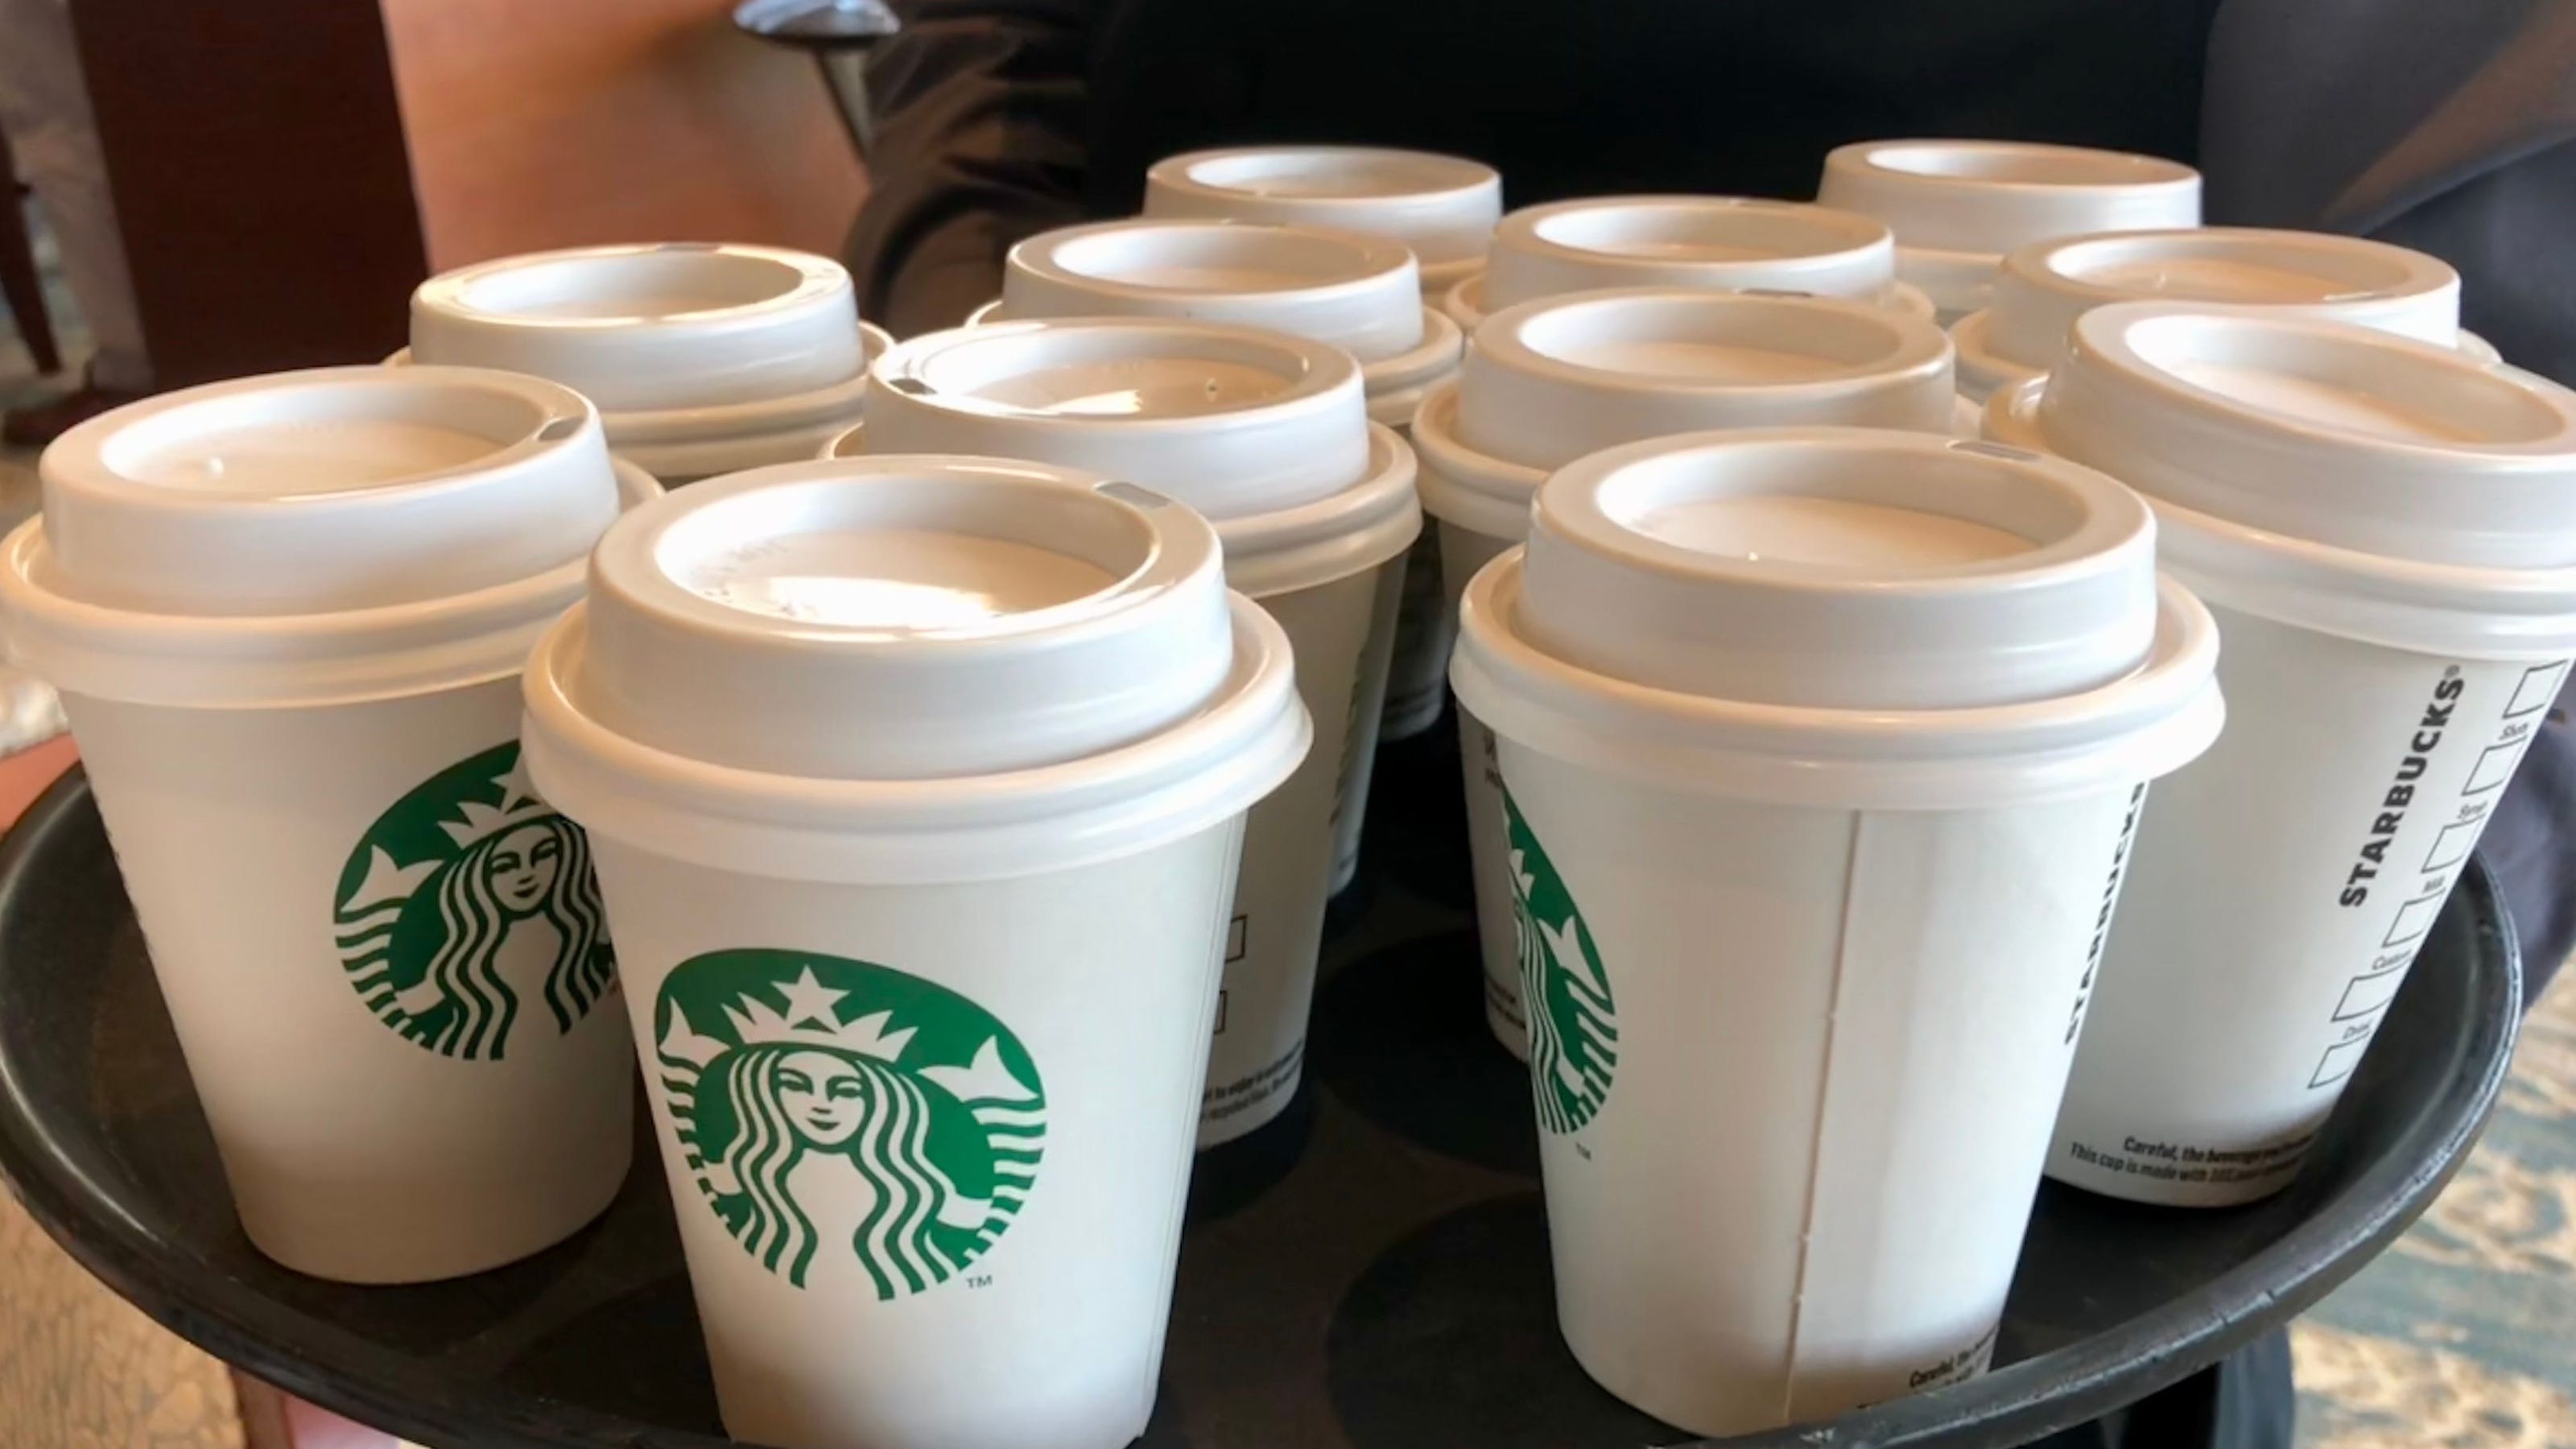  Starbucks  raises coffee  prices 10 20 cents in U S 